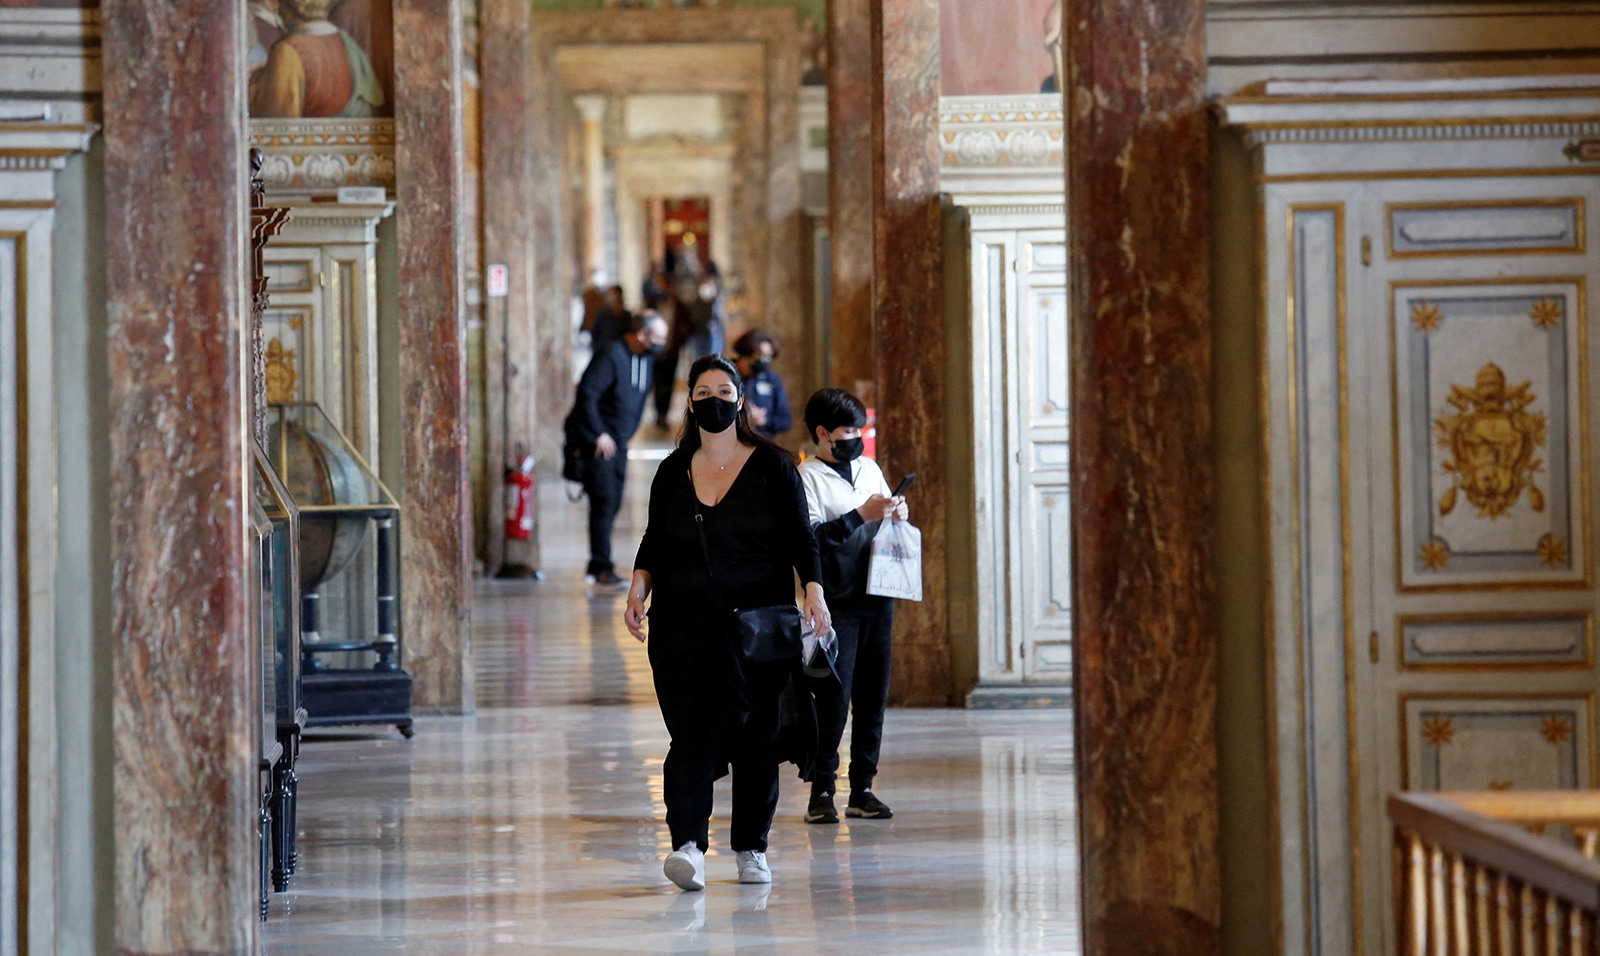   موظفو متاحف الفاتيكان يبدأون نزاعًا عماليًا غير مسبوق 